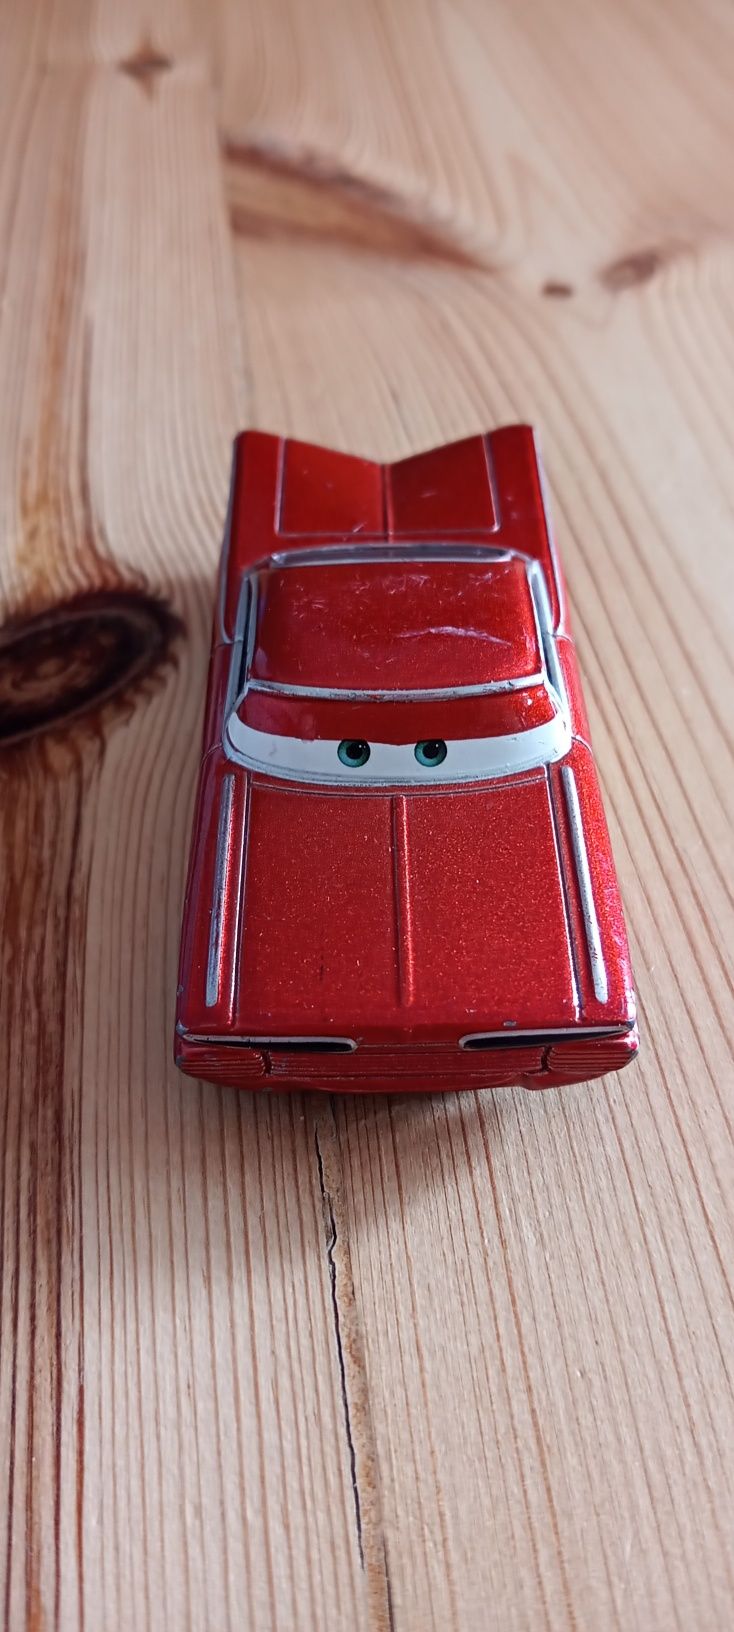 Resorak Auta 2 Cars Roman Błyskawica Disney Mattel Pixar